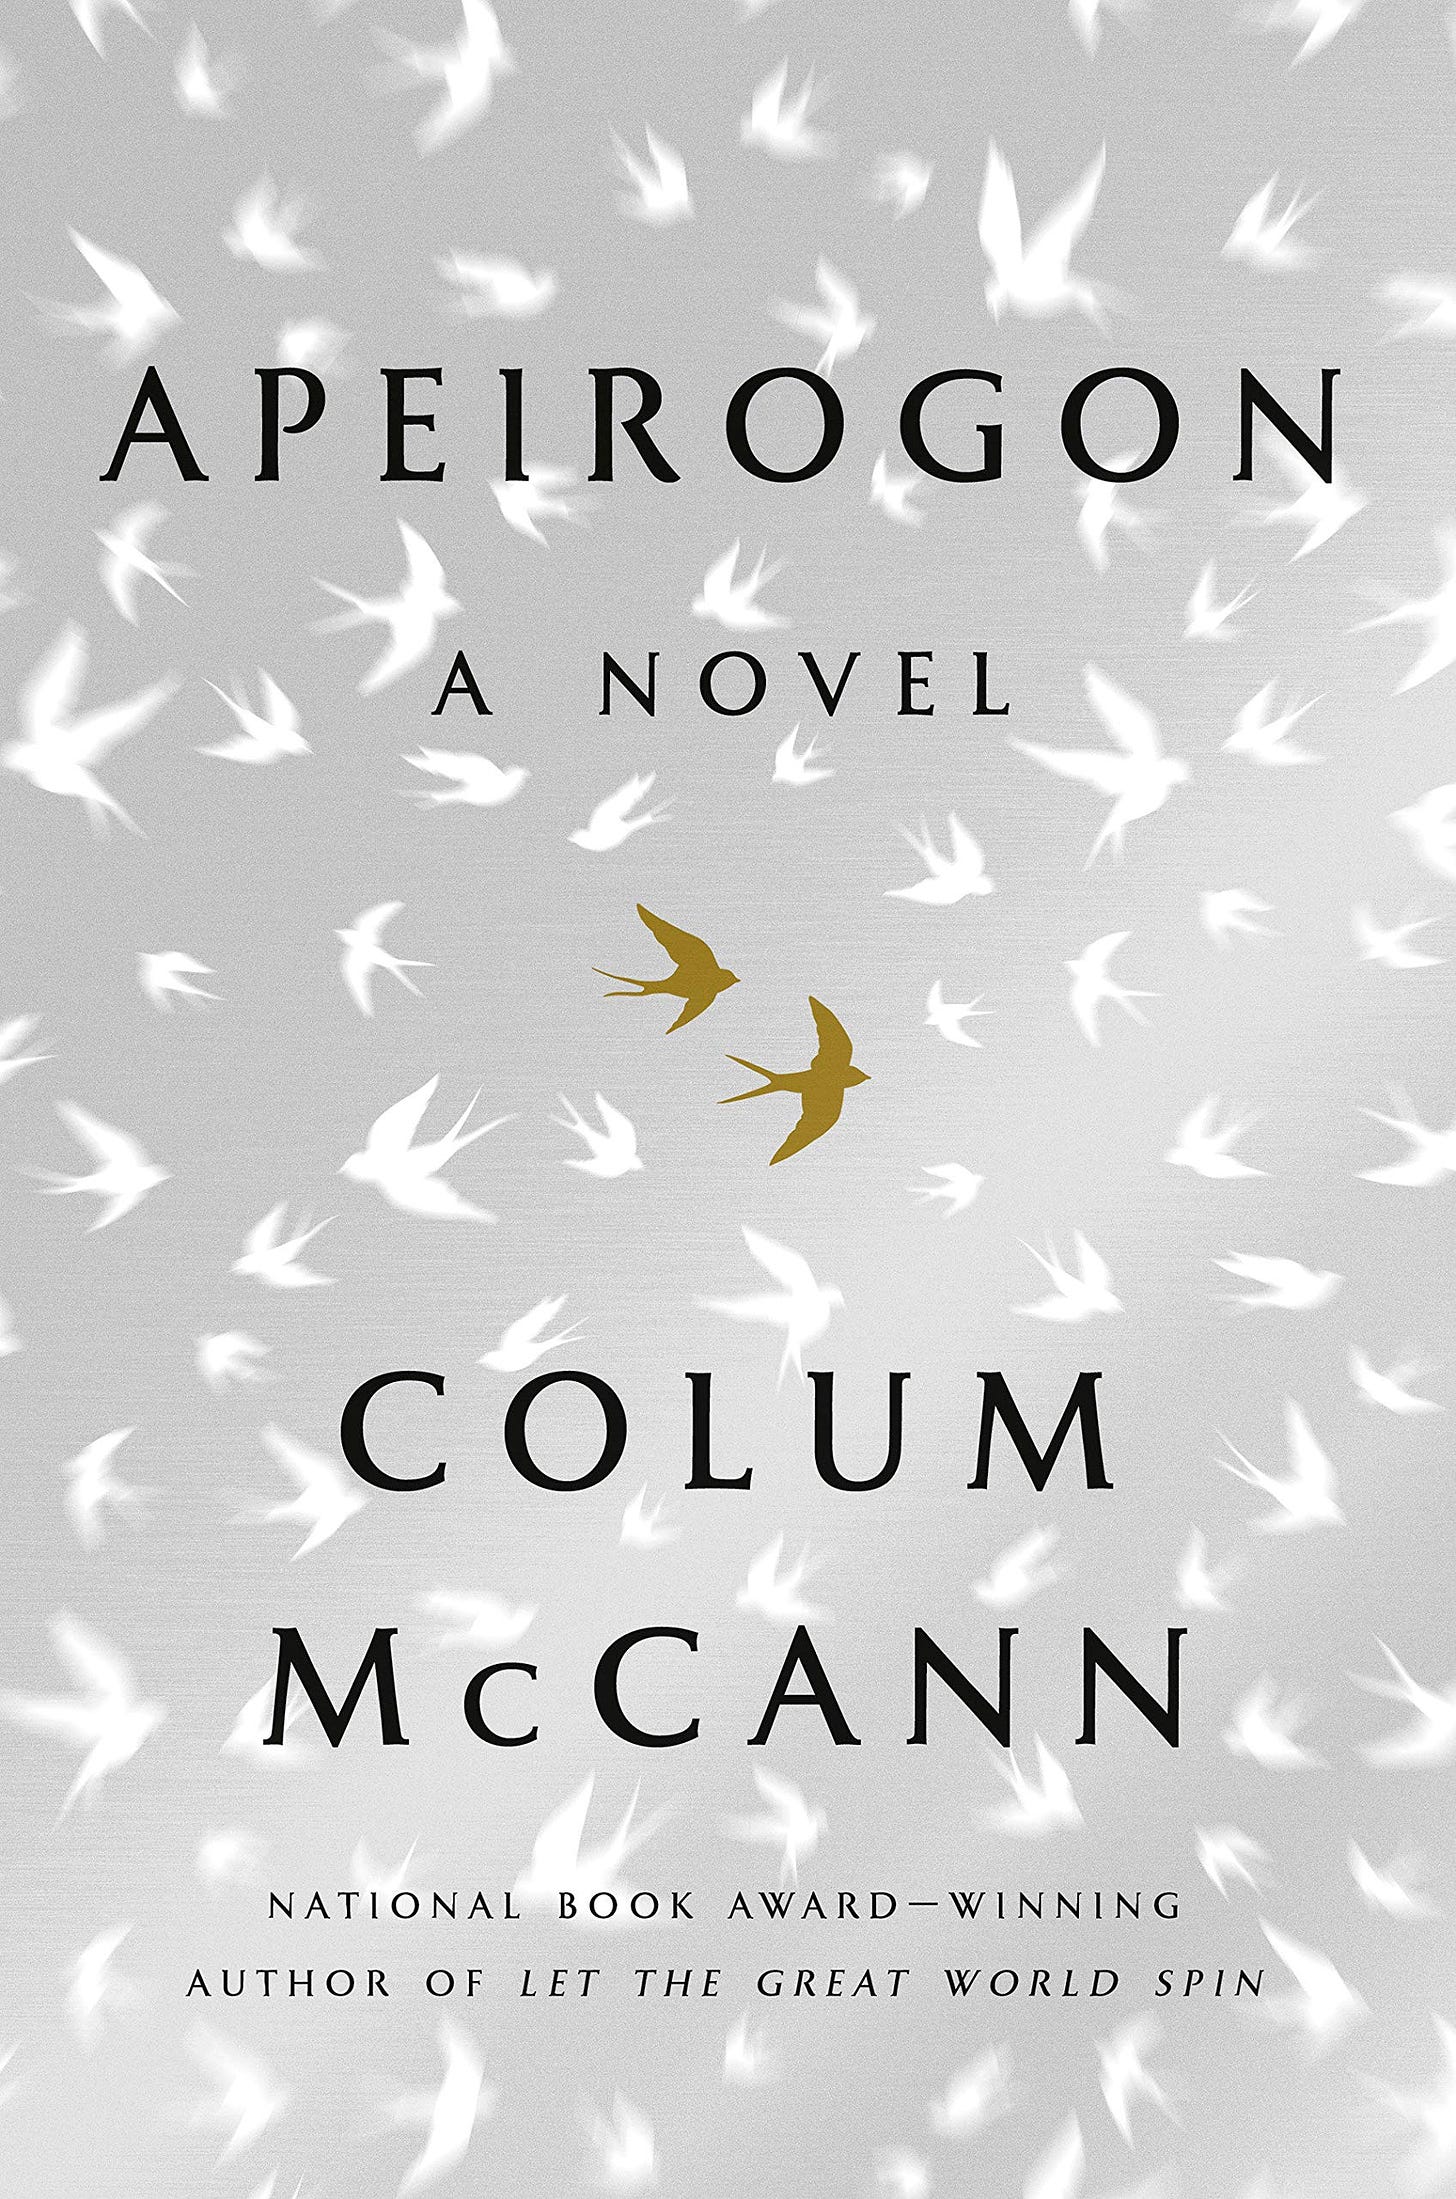 Amazon.com: Apeirogon: A Novel: 9781400069606: McCann, Colum: Books